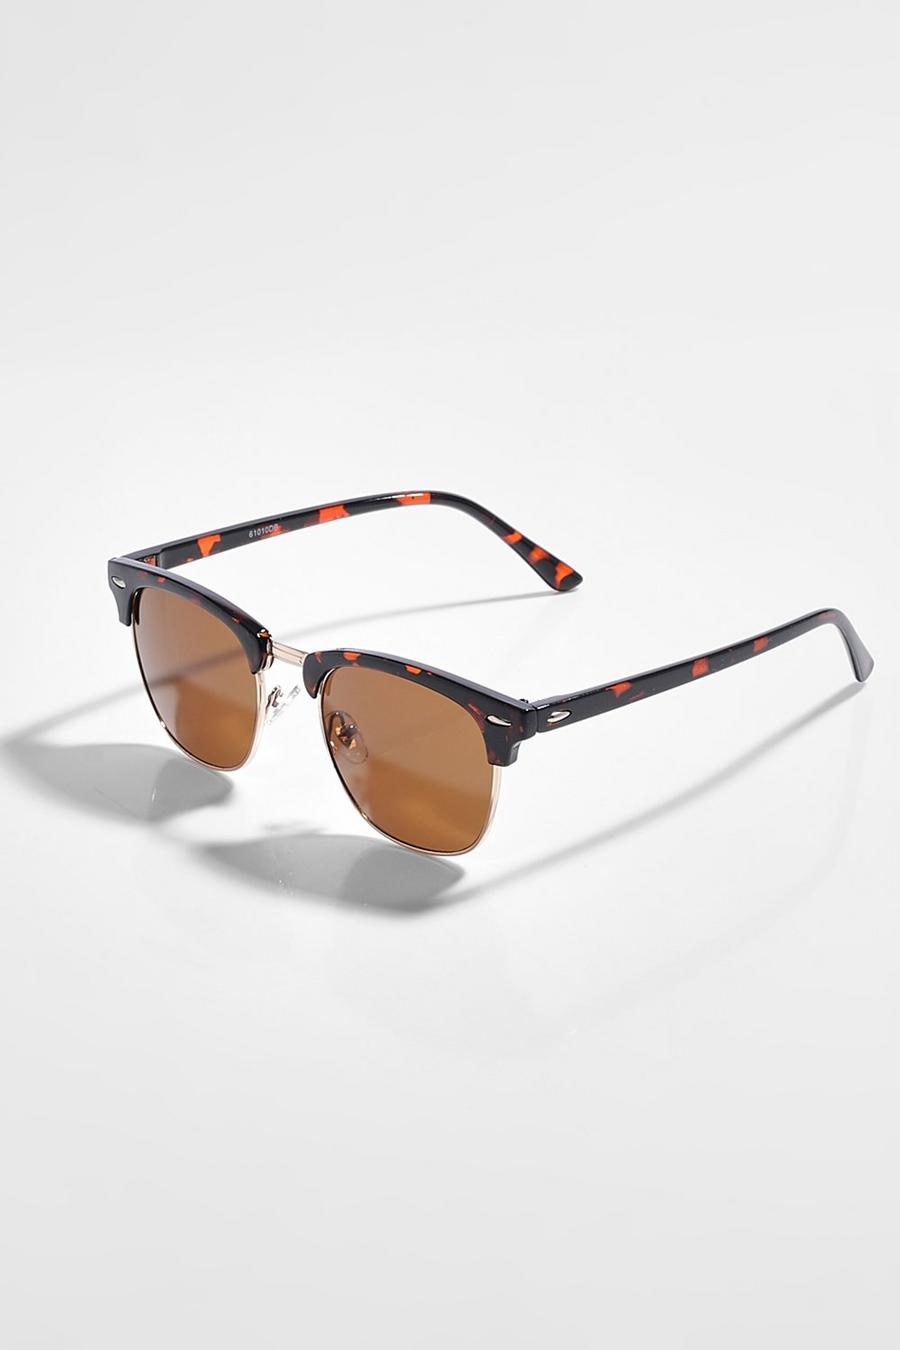 Brown braun Classic Square Top Tortoiseshell Sunglasses